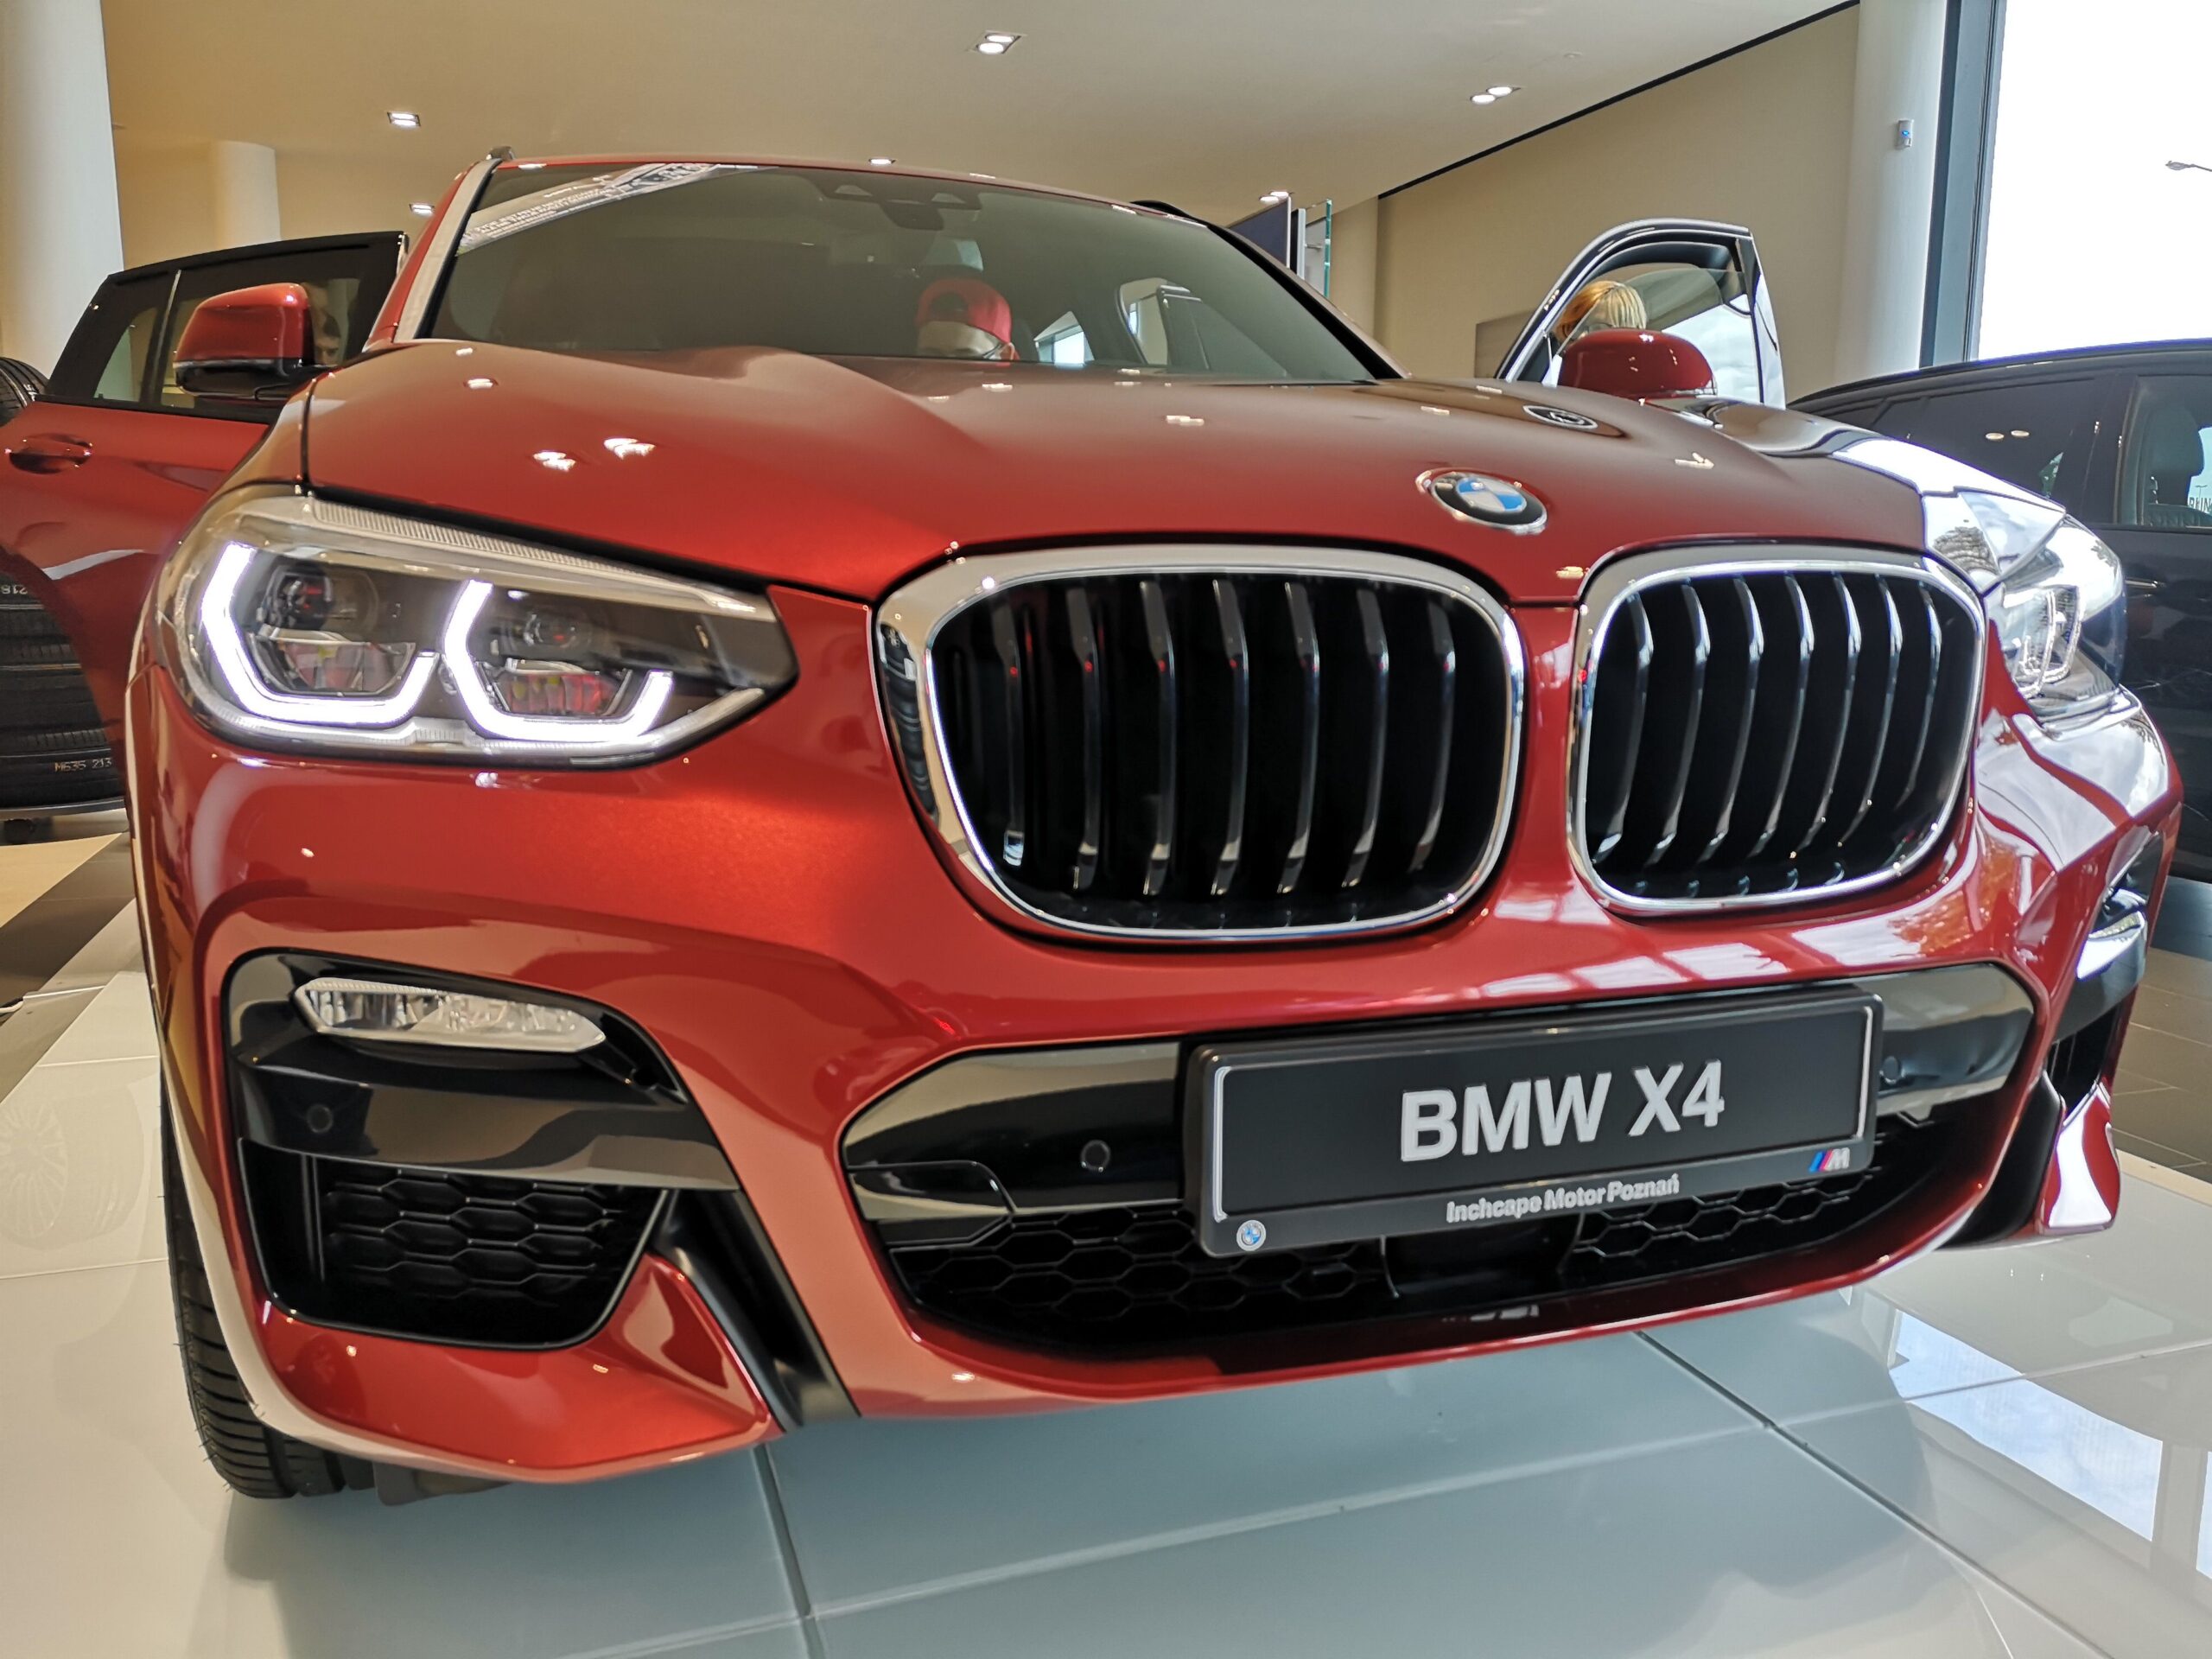 Nowe BMW X4, czyli charakter sam w sobie